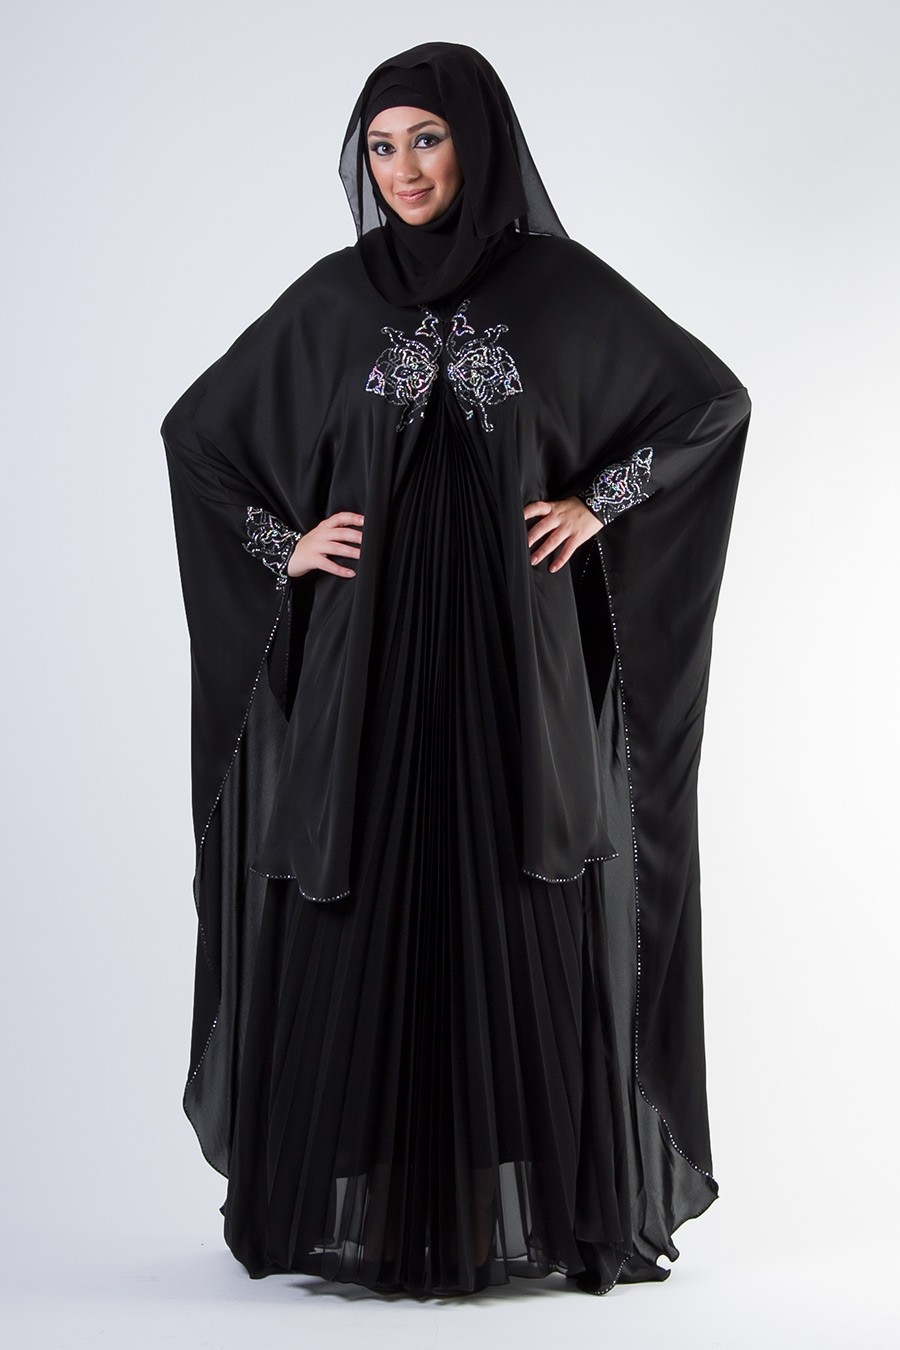 احدث موديلات عبايات 2014 سوداء انيقة – Arab Fashion